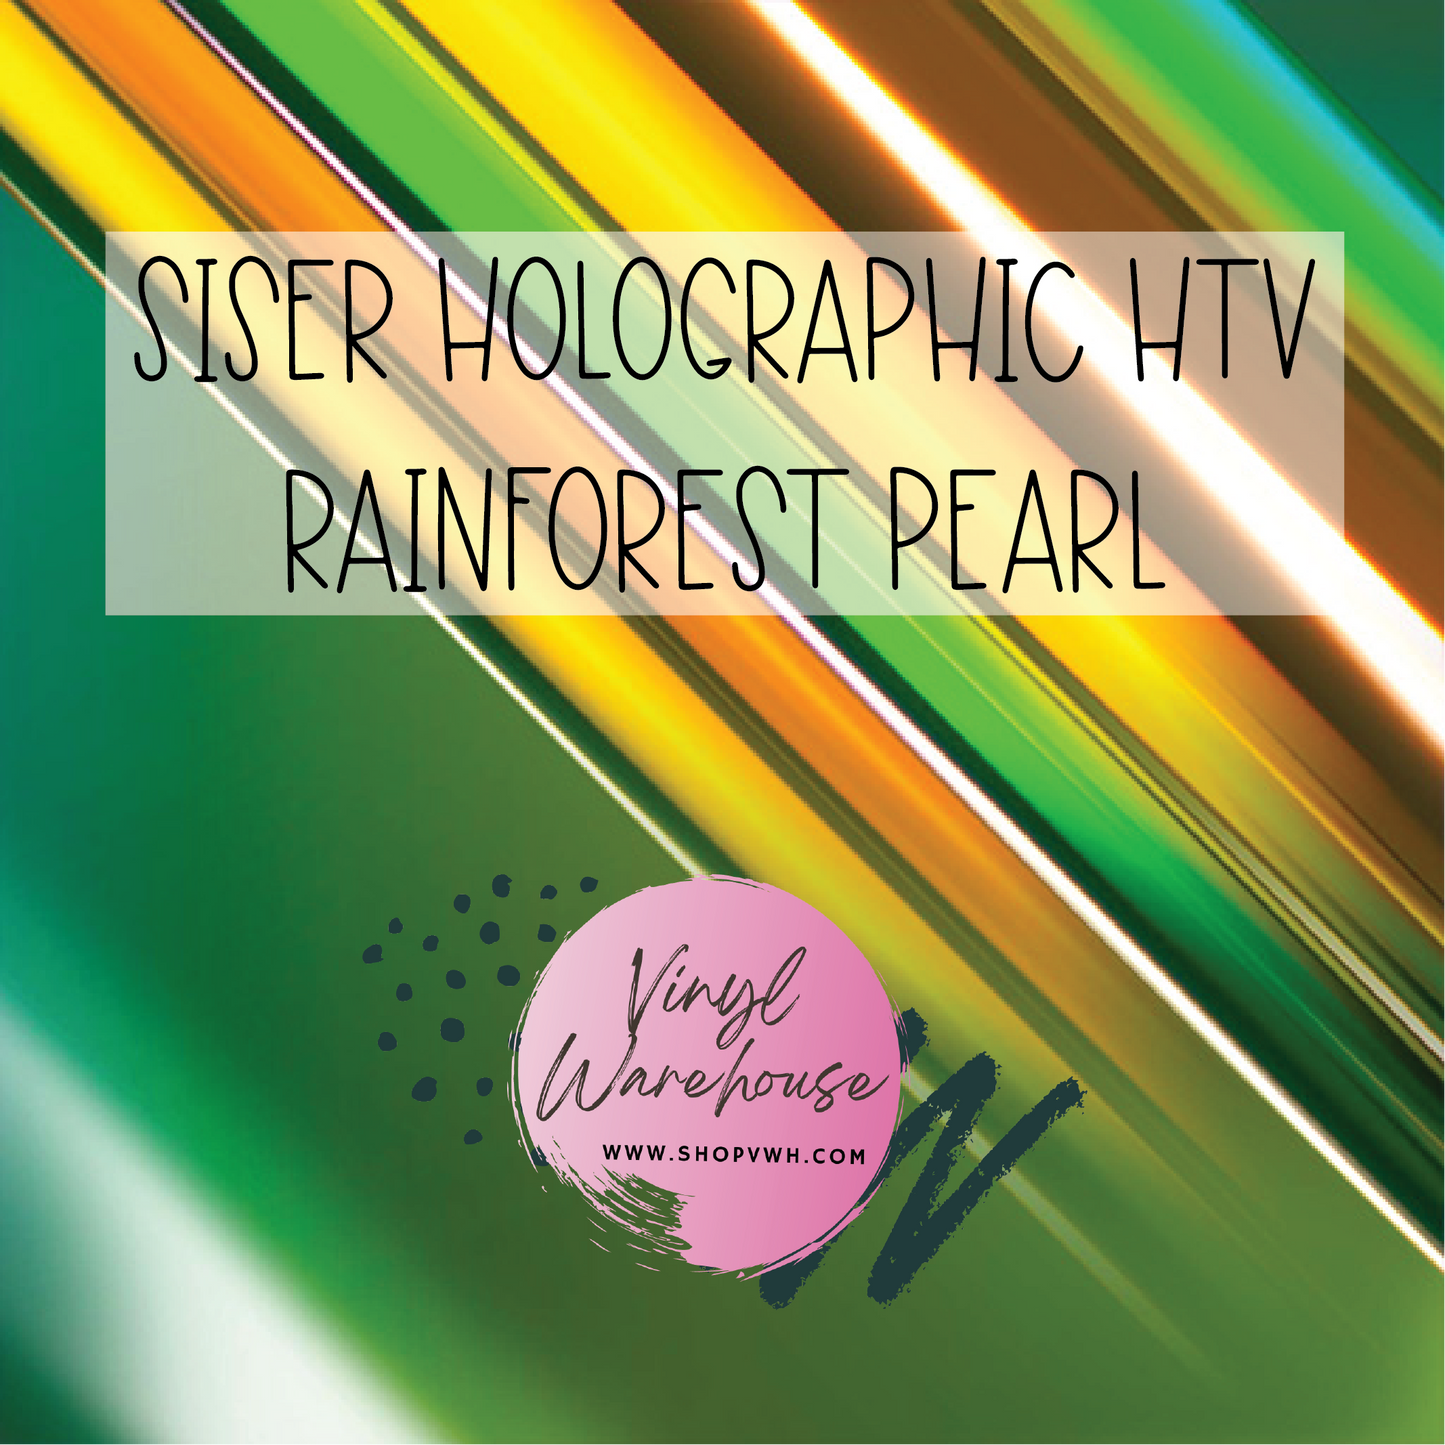 Siser Holographic HTV - Rainforest Pearl